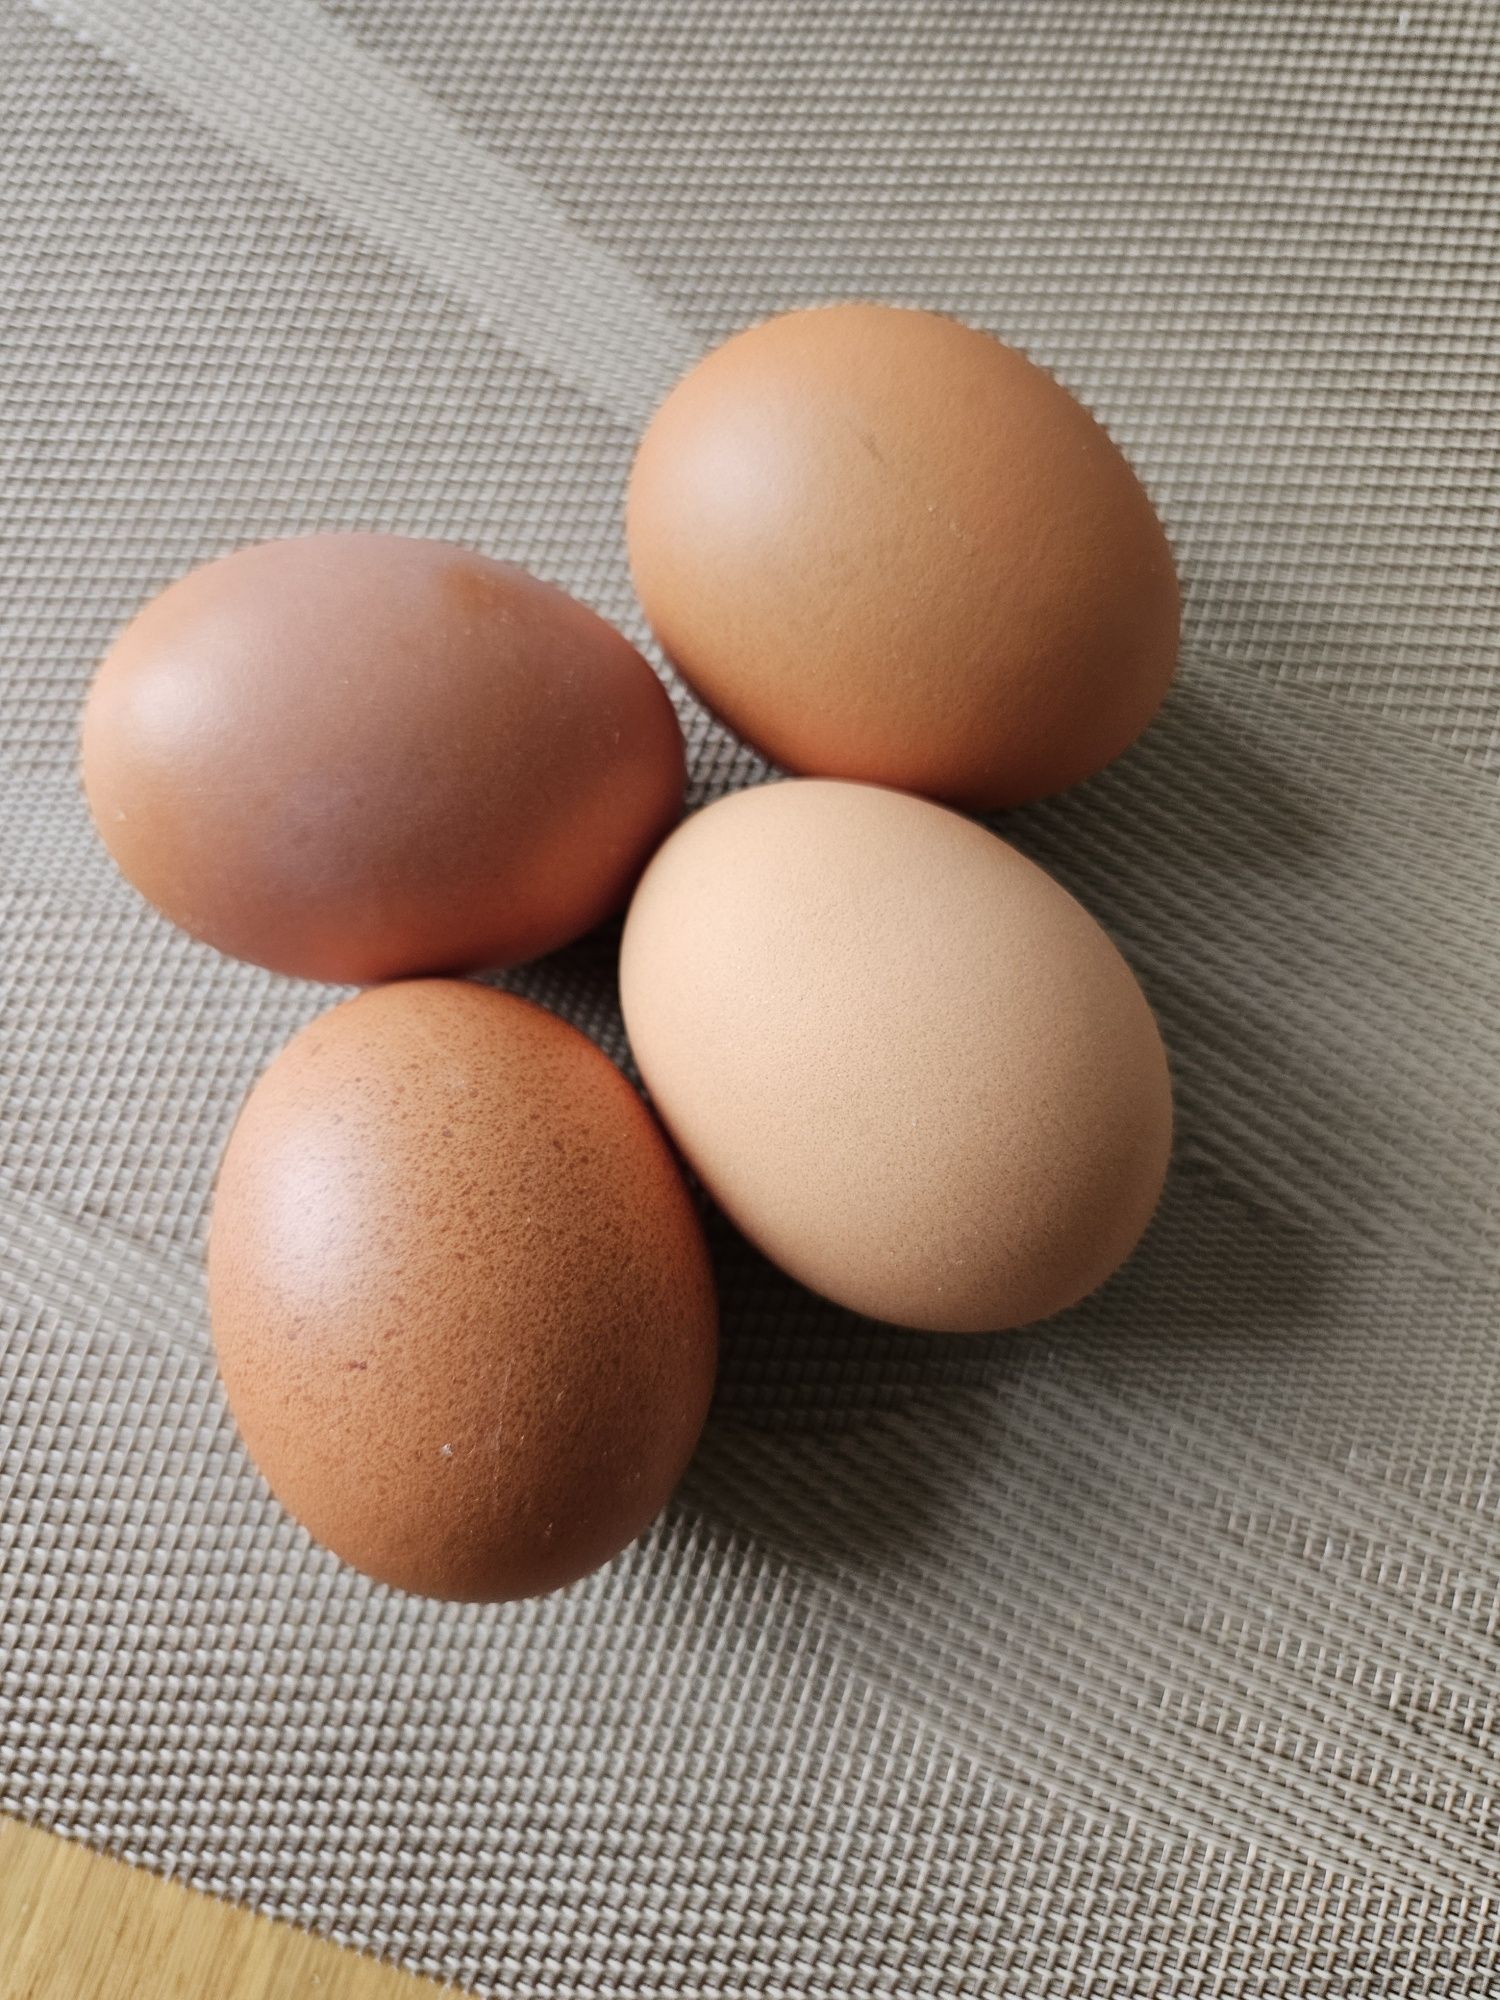 Ouă de găini australorp pentru incubat.